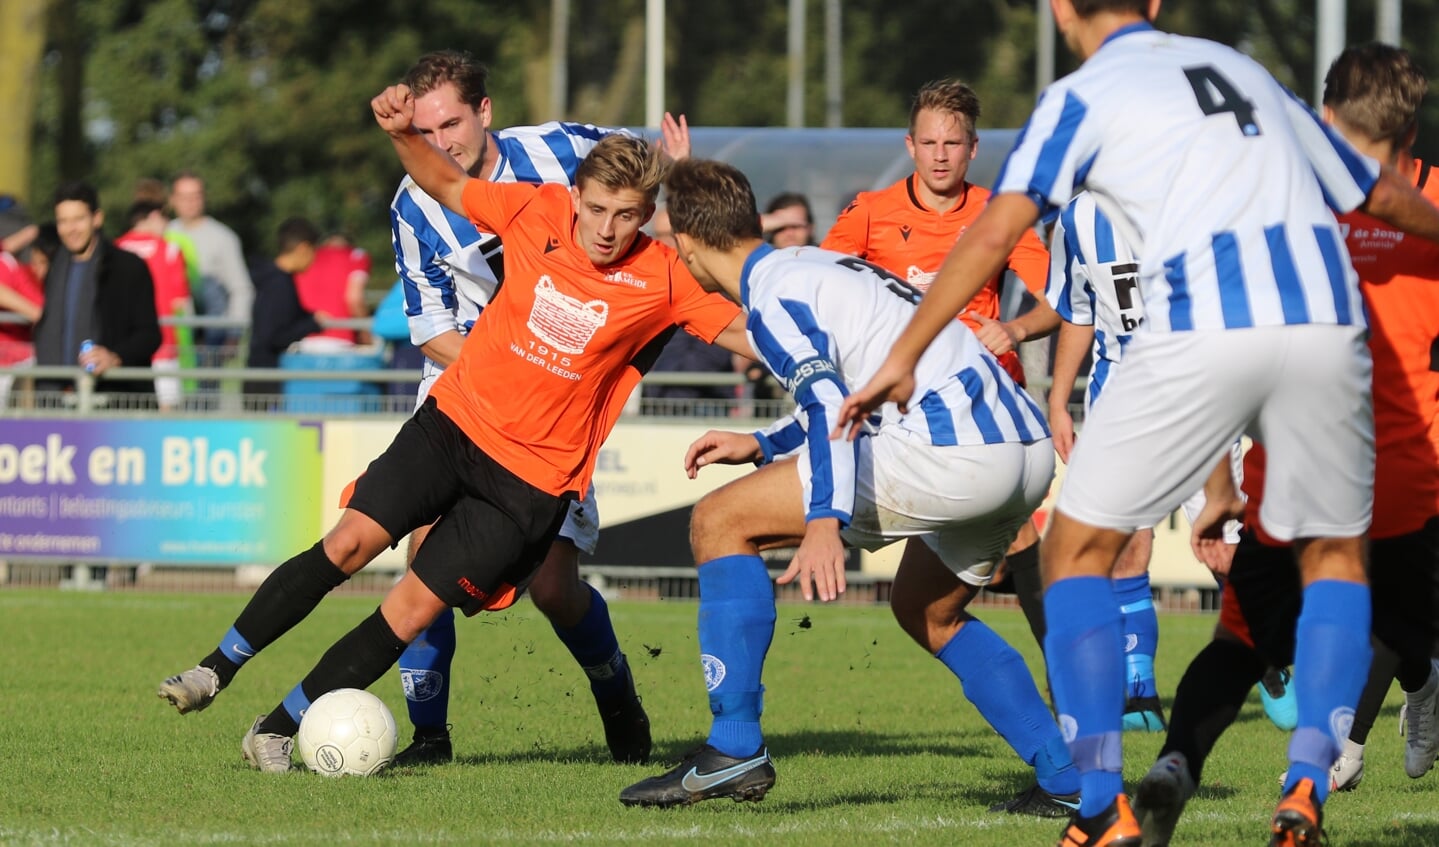 • Schoonhoven - Ameide (1-2).